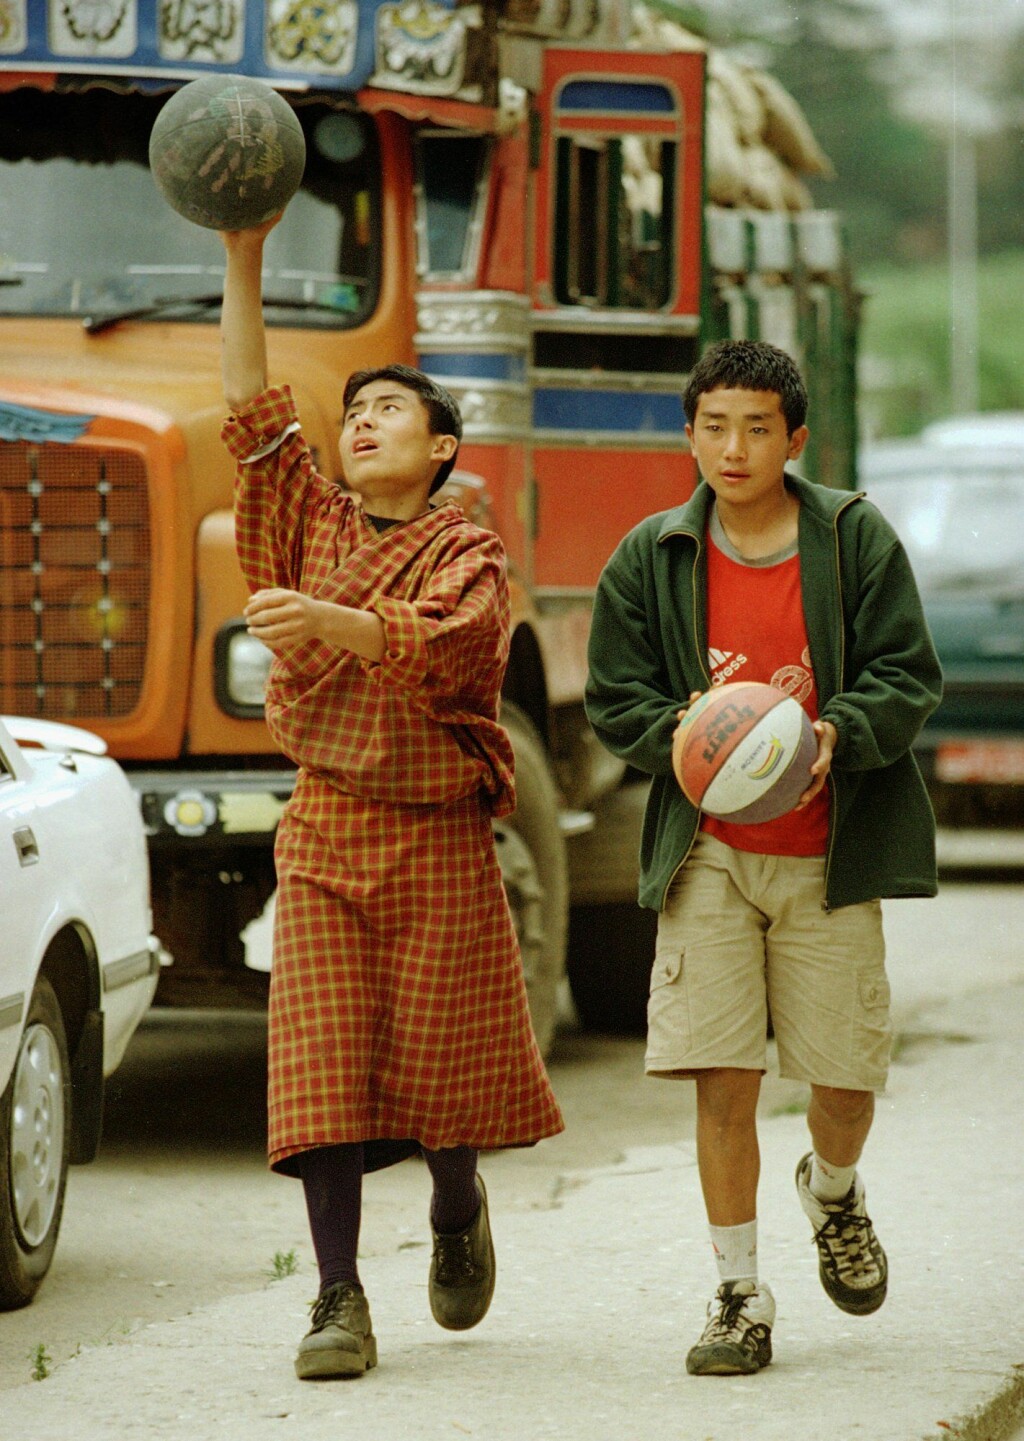 Dva lica mode u Butanu 2000. godine - tradicionalno i moderno